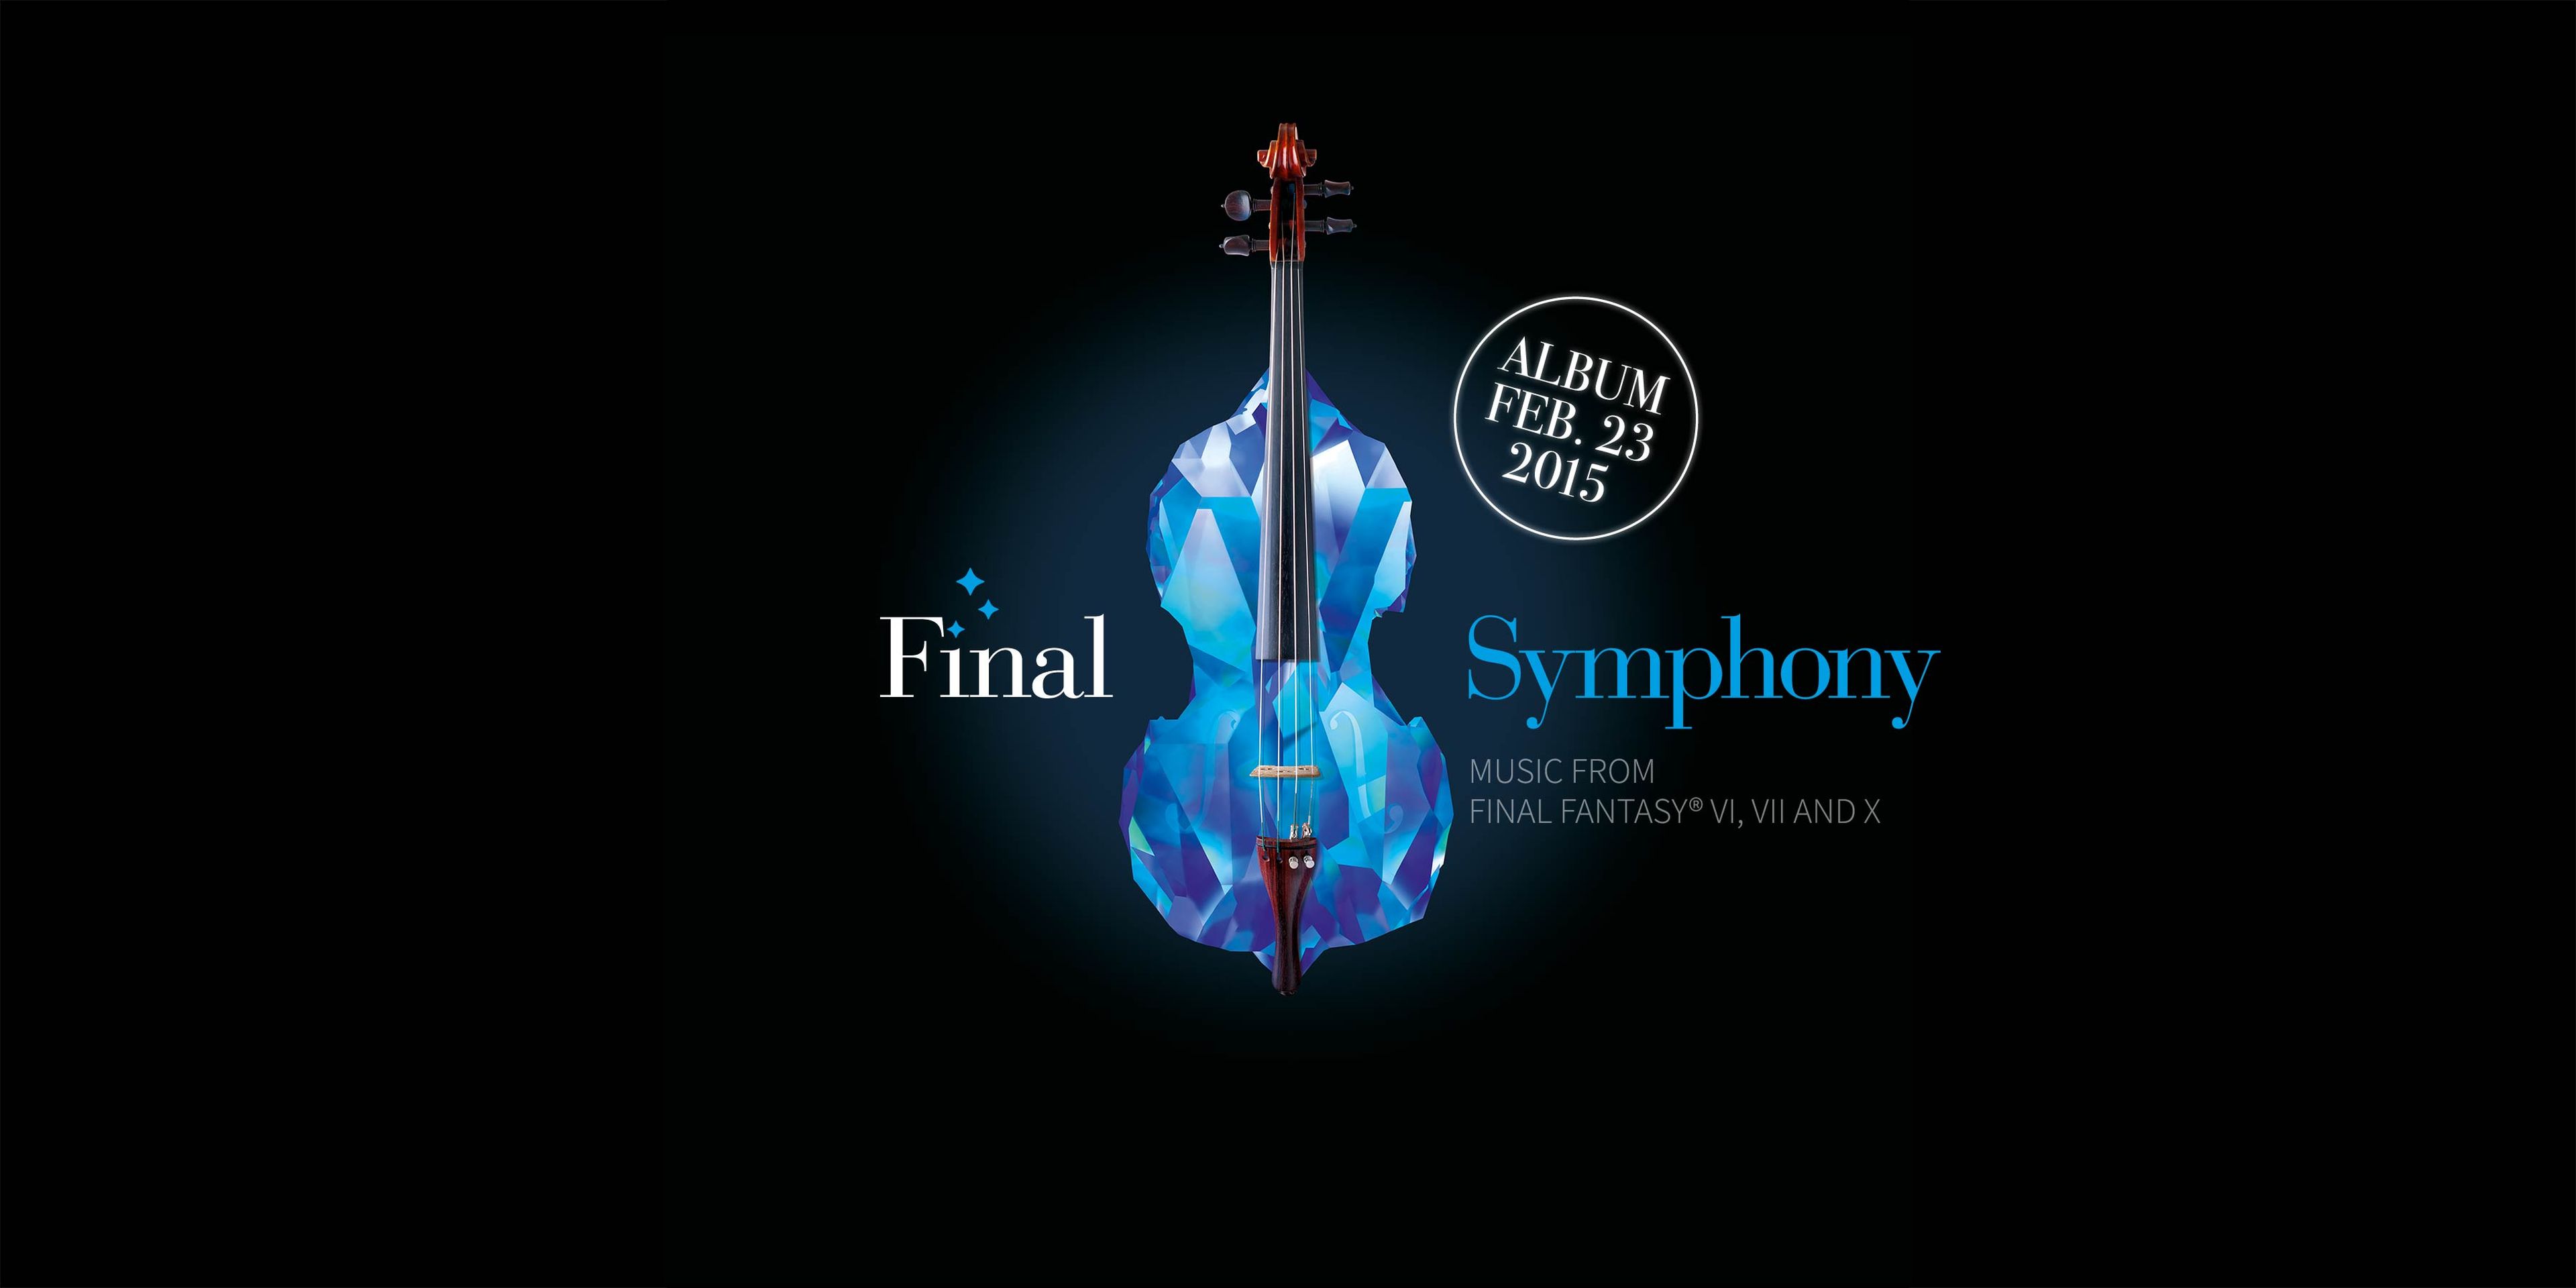 Final Fantasy, nuevo disco por la Orquesta Sinfónica de Londres